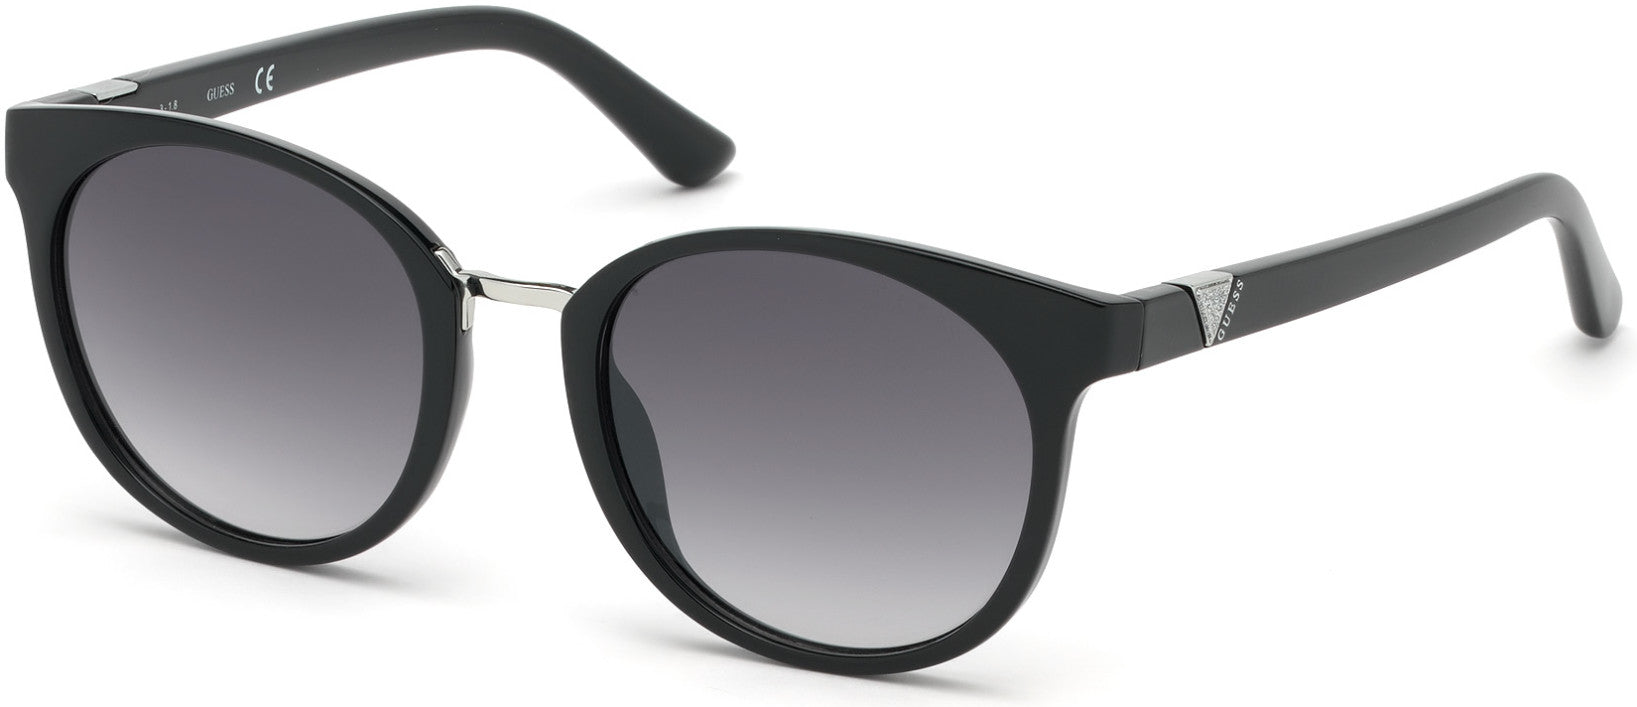 Guess GU7601 Round Sunglasses 01B-01B - Shiny Black / Gradient Smoke Lenses